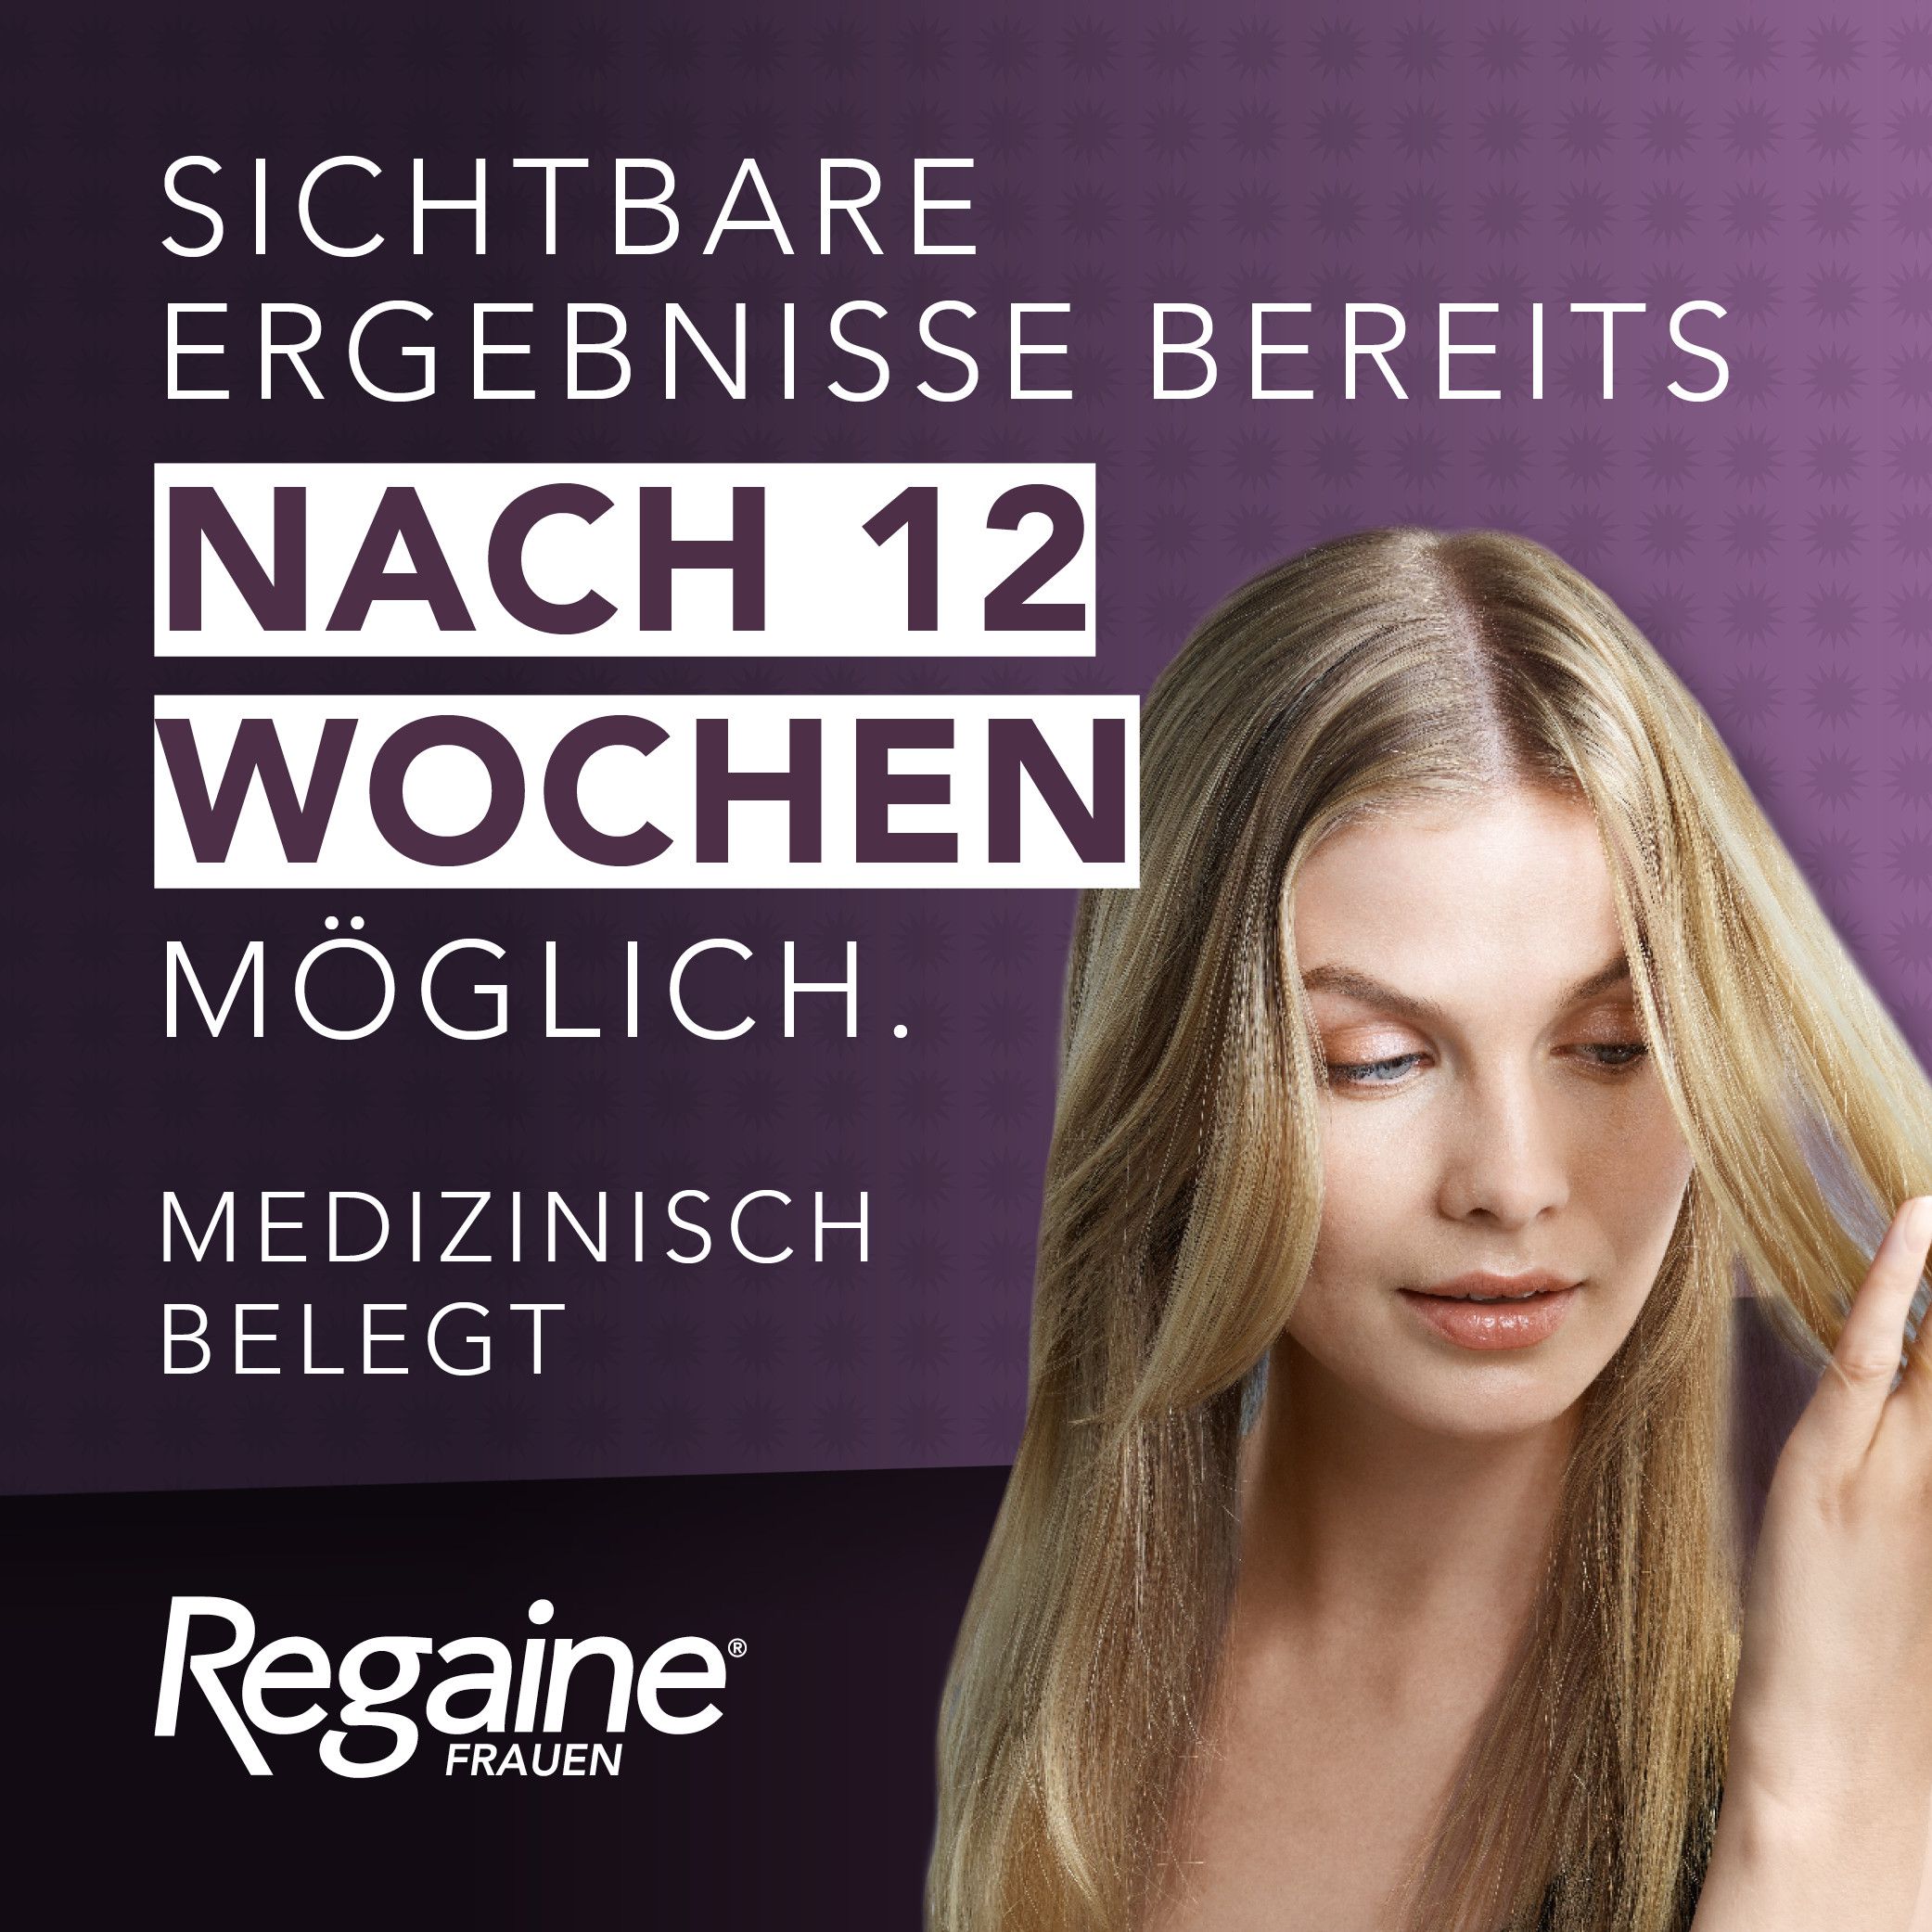 REGAINE Frauen Schaum 50 mg/g bei Haarausfall vom weiblichen Typ